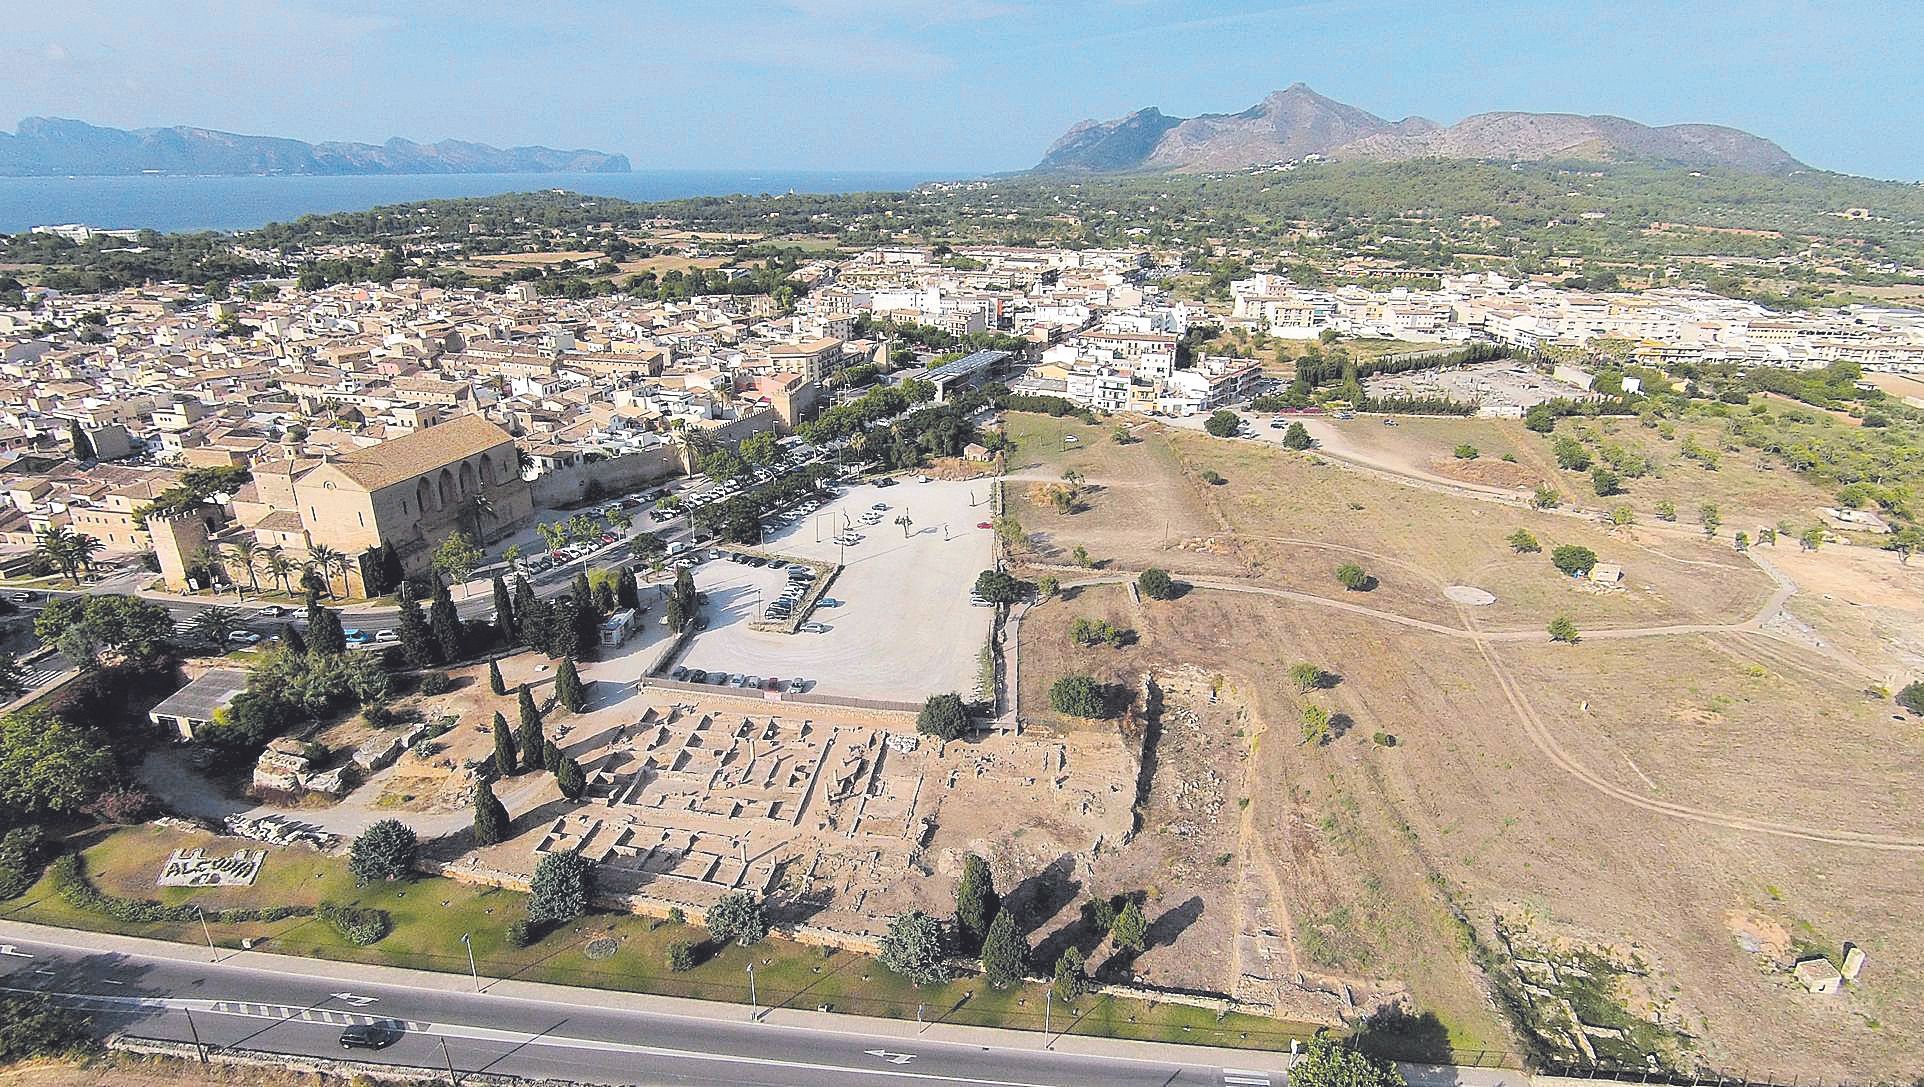 Vista aérea de parte del yacimiento romano, donde se aprecia sa Portella, zona residencial, con Alcúdia al fondo.